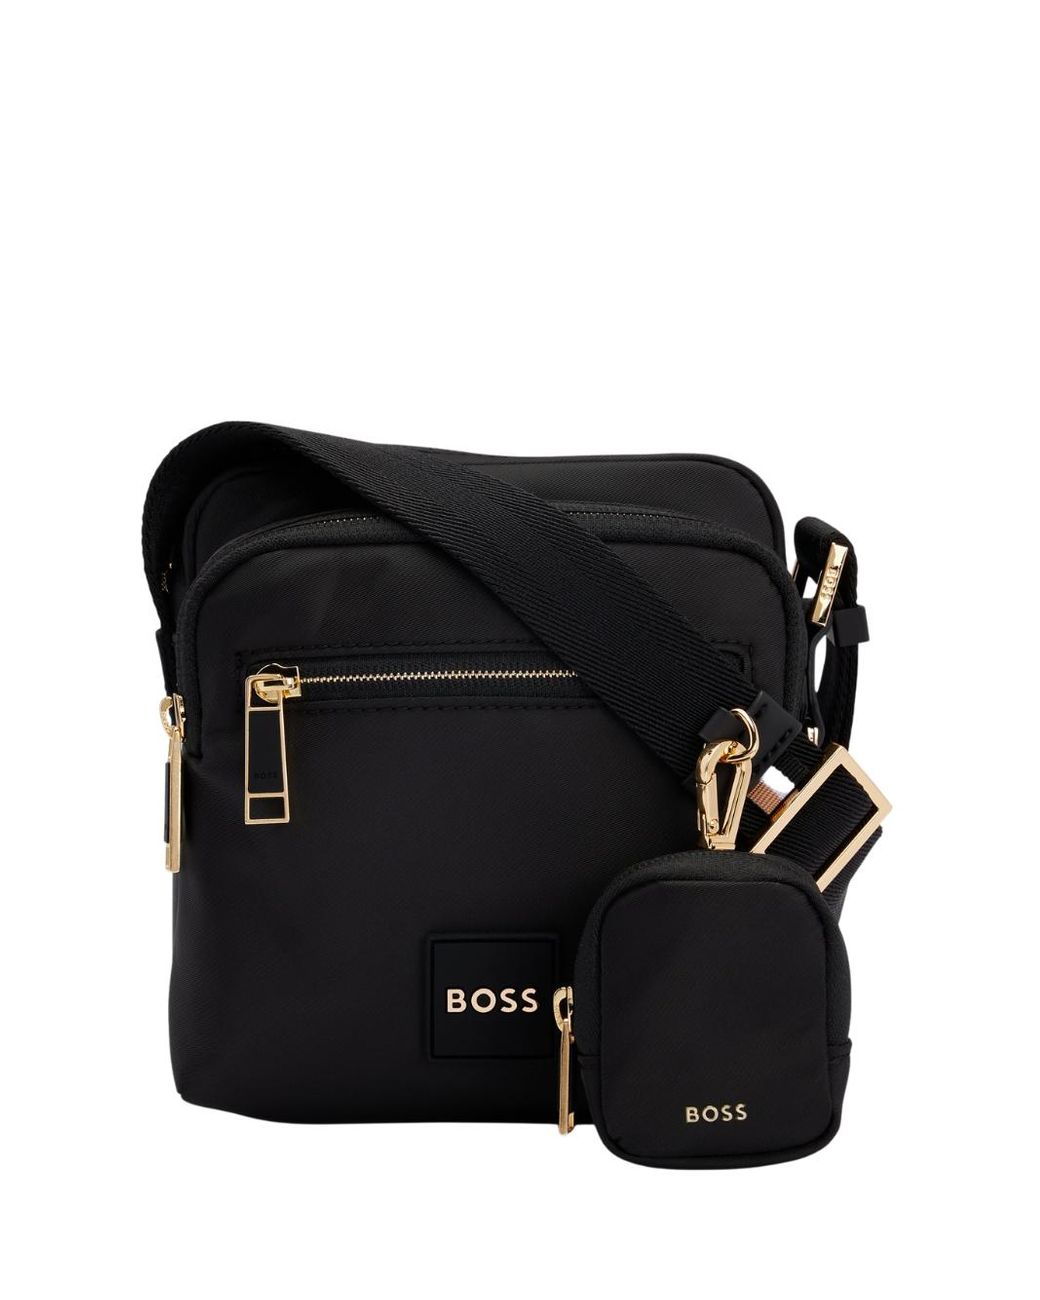 BOSS by HUGO BOSS Boss Holiday Zip Bag Black for Men | Lyst